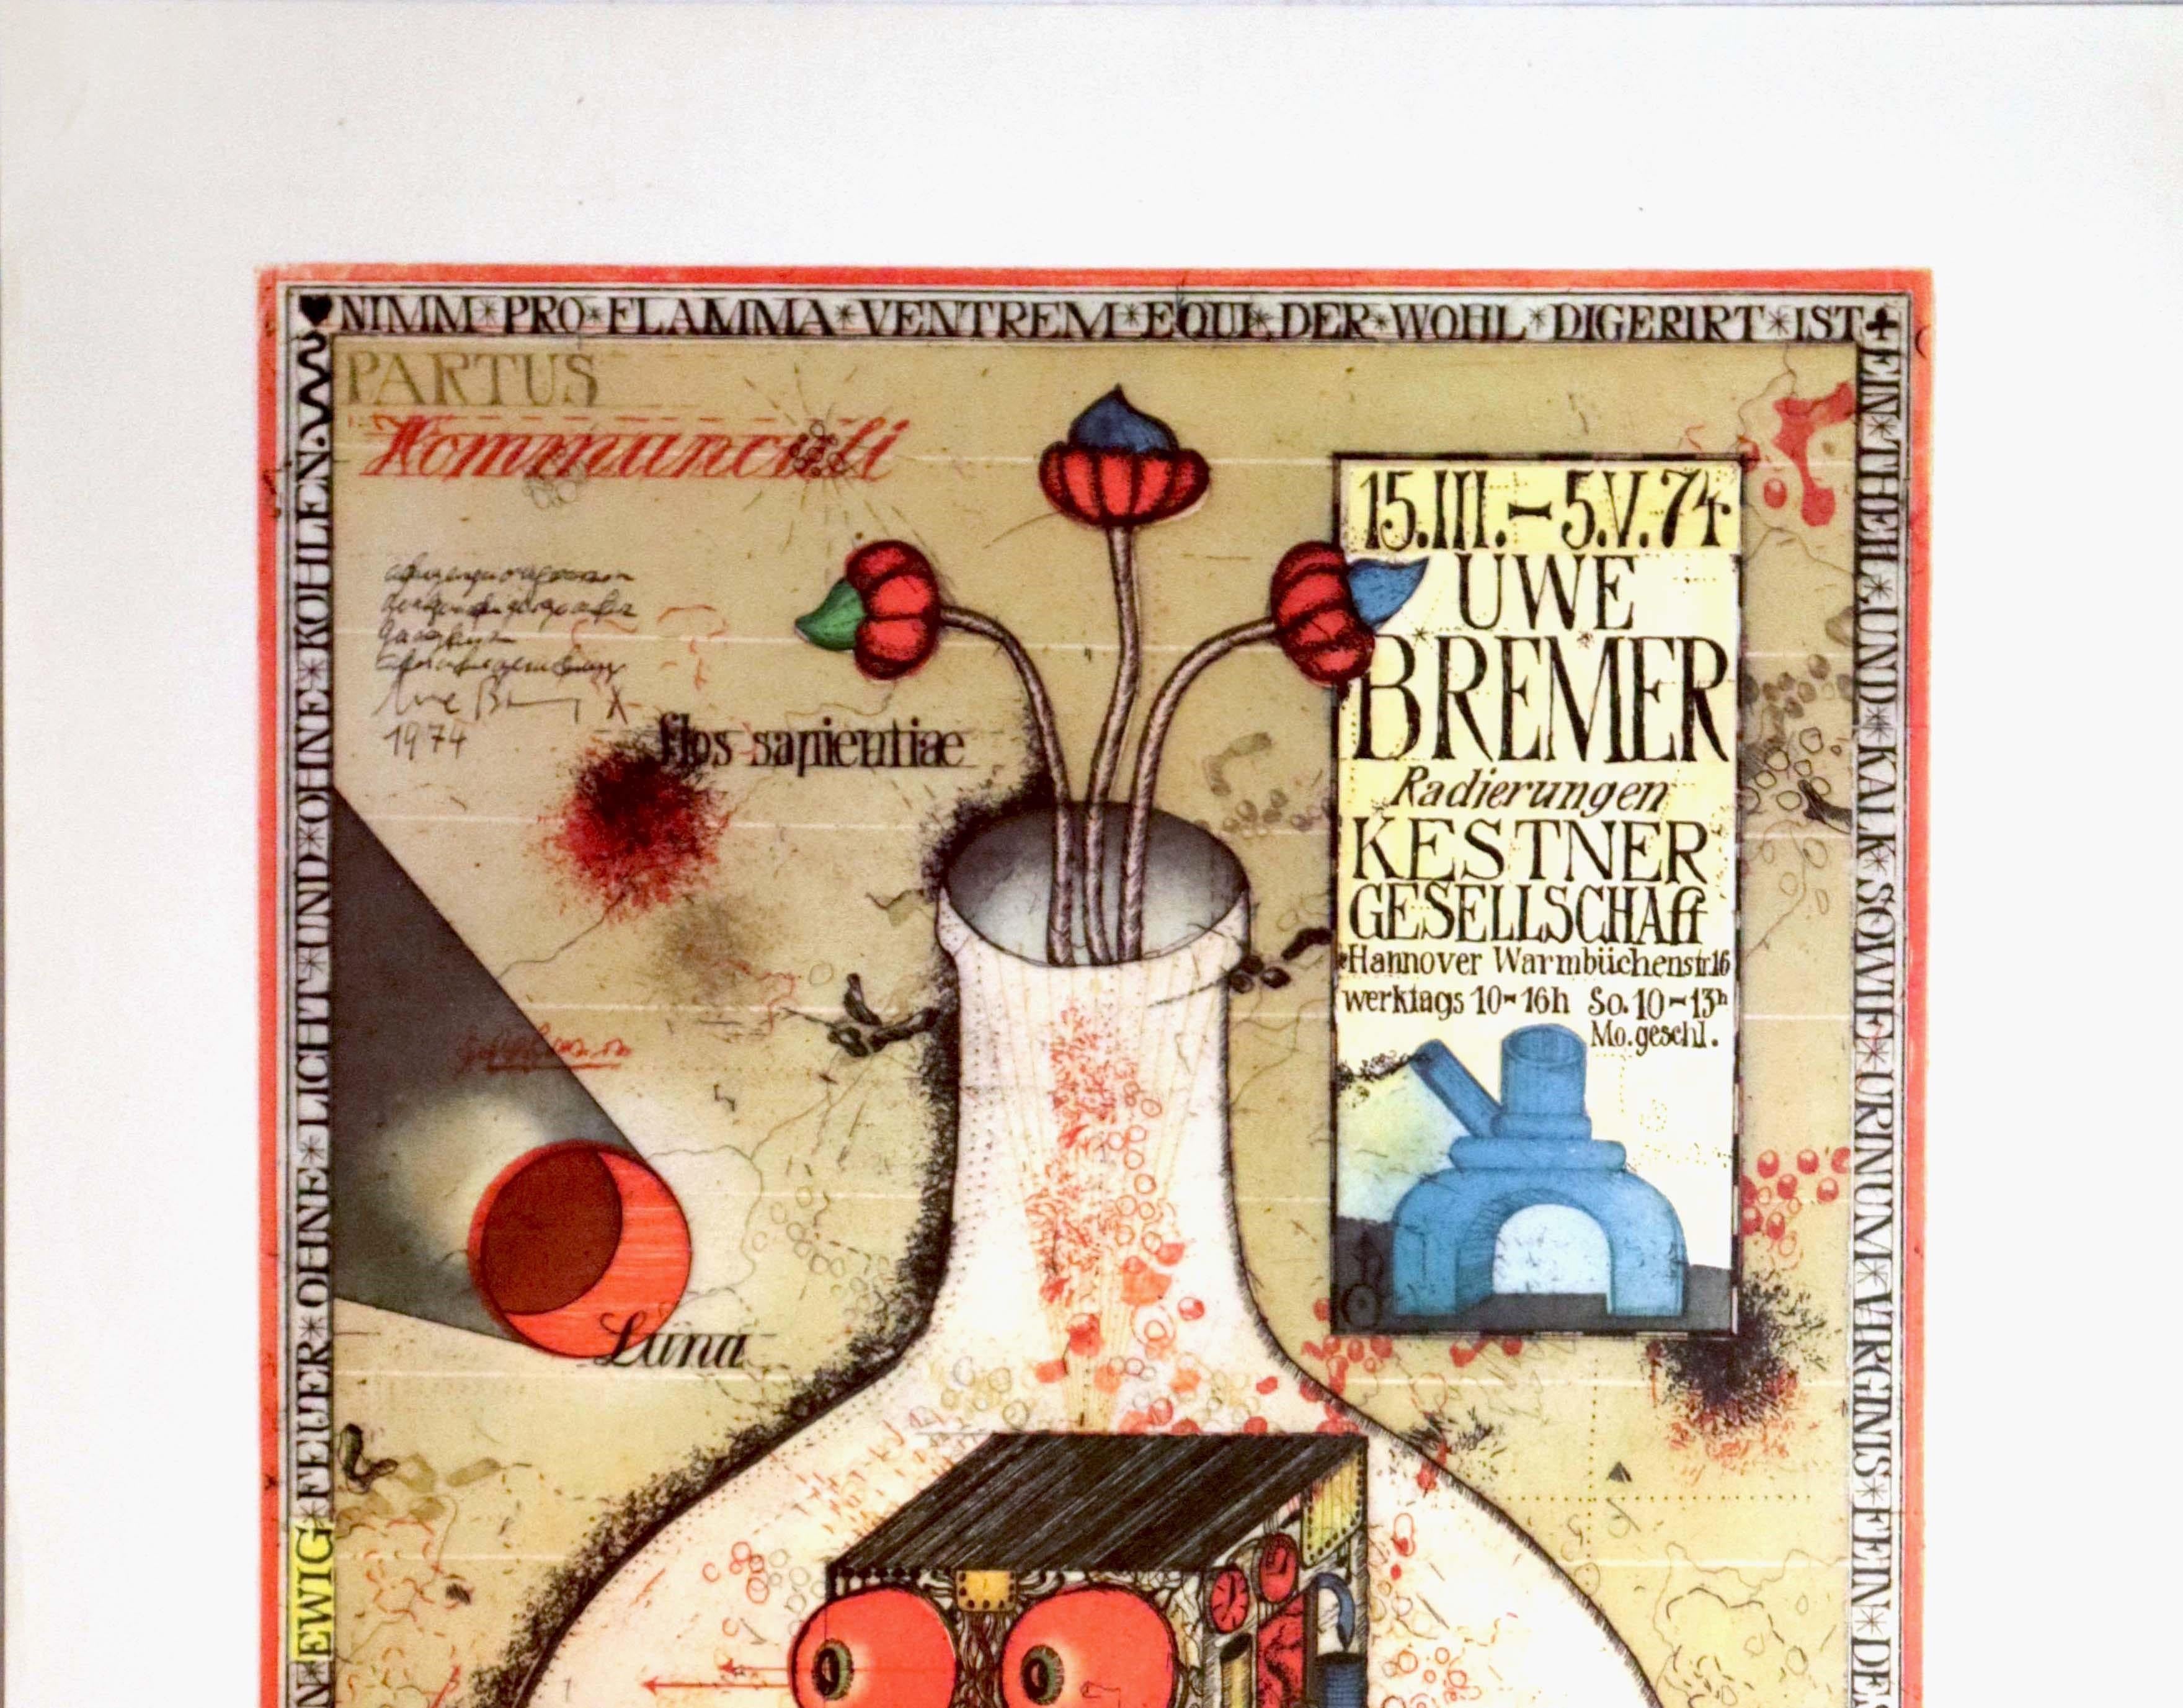 Affiche publicitaire originale d'époque pour une exposition de gravures et d'œuvres d'art du peintre réaliste fantastique et artiste graphique allemand Uwe Bremer (né en 1940) à la Société Kestner à Hanovre du 15 mars au 5 mai 1974. L'affiche